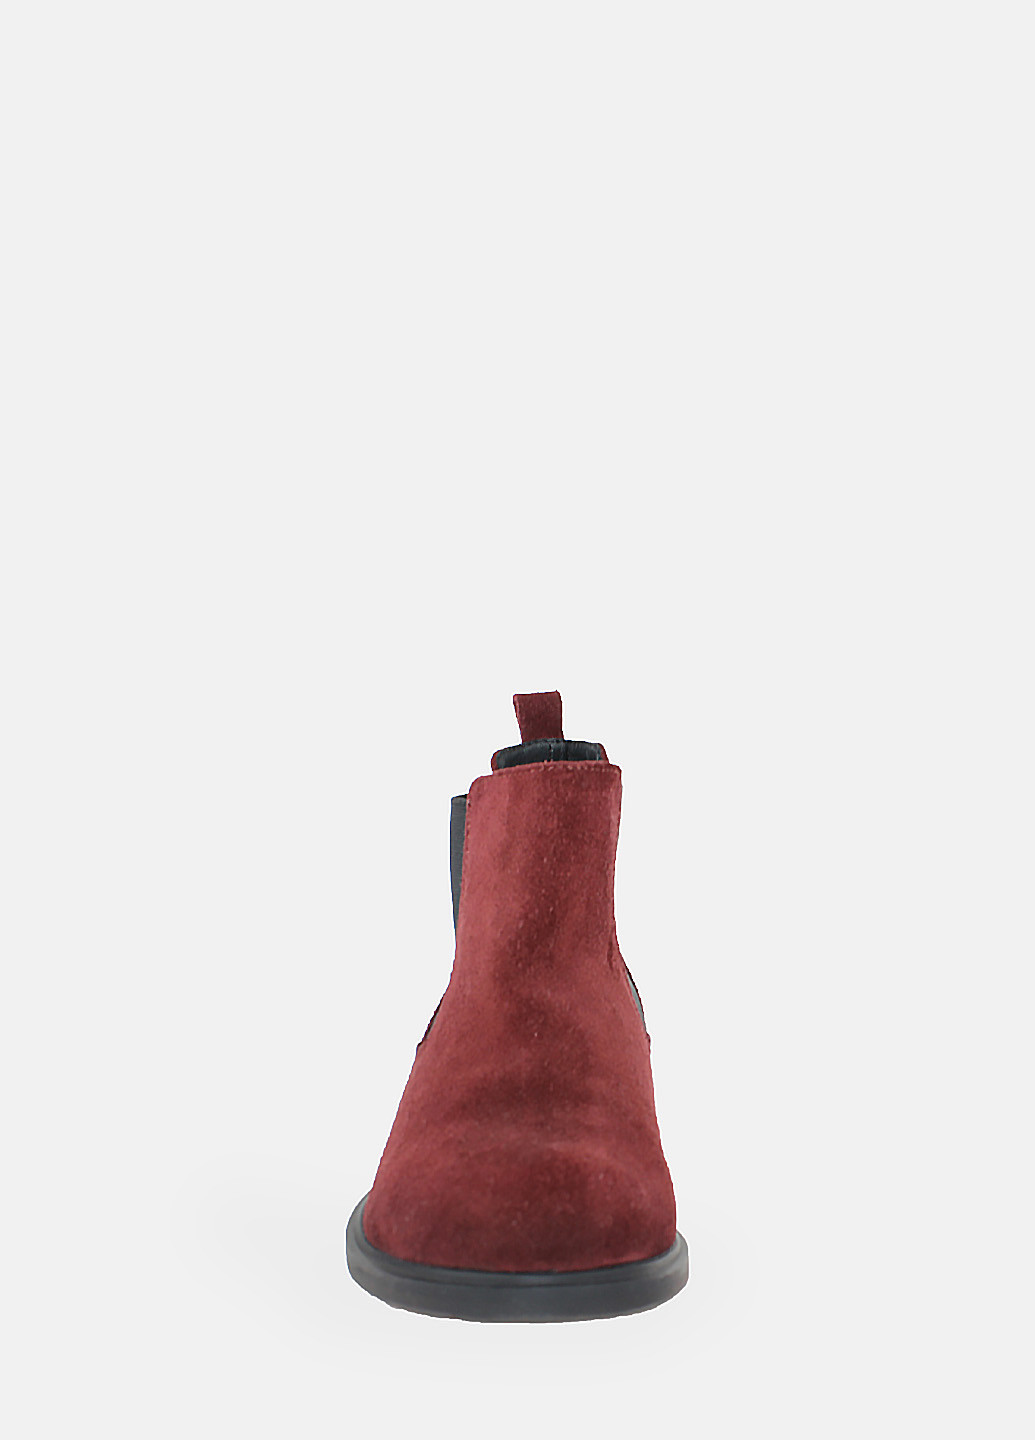 Осенние ботинки rhit497-12-11 бордовый Hitcher из натуральной замши